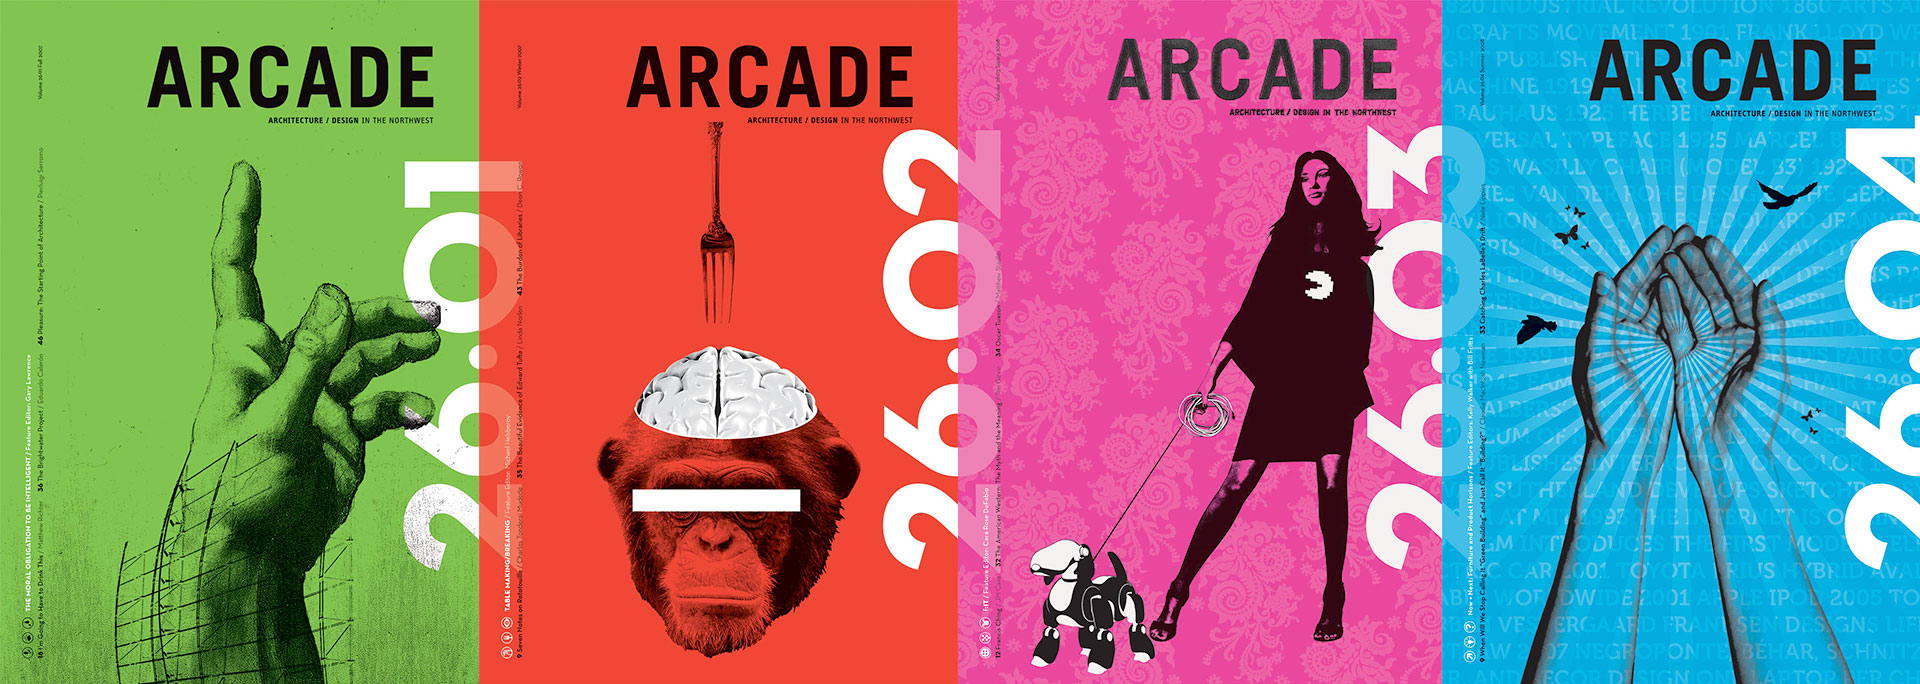 ARCADE-Volume-Covers